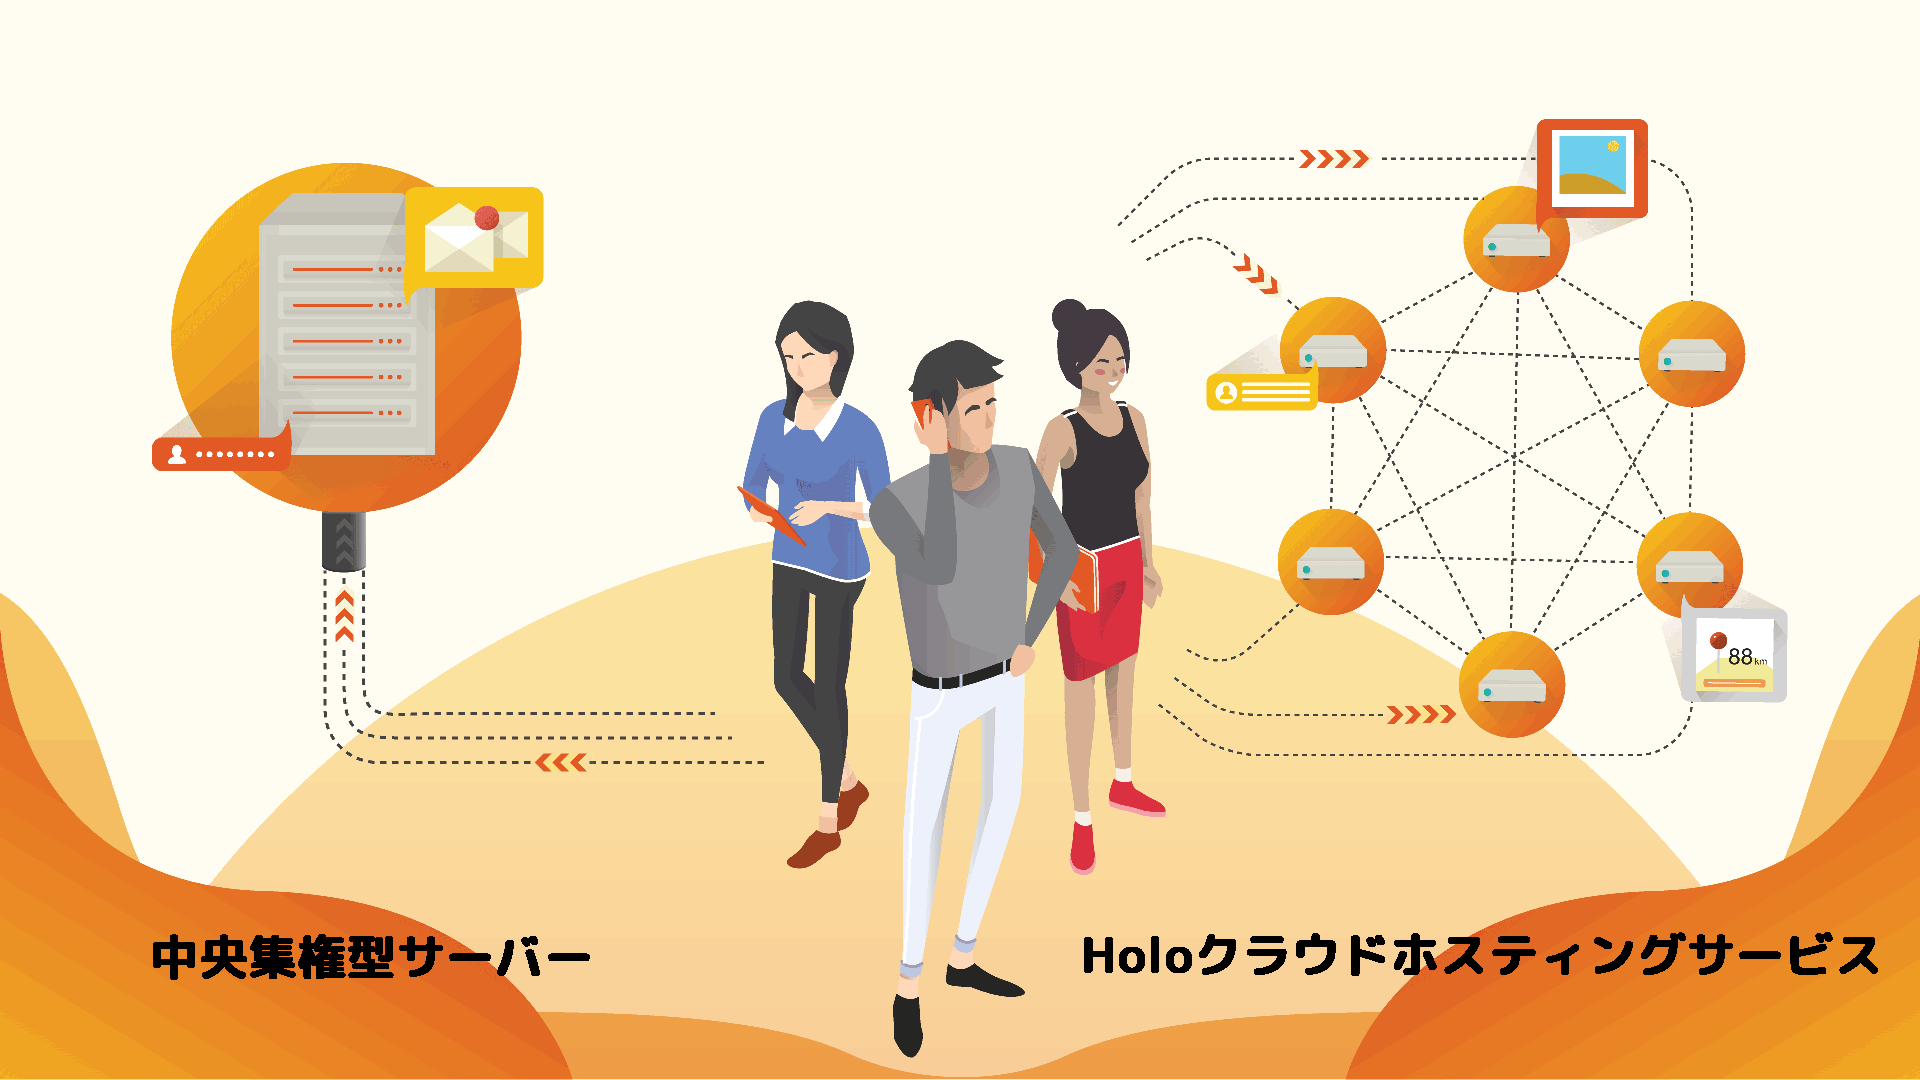 次世代技術「ホロチェーン（Holochain）」を使ったアプリ「Kizuna」を発表